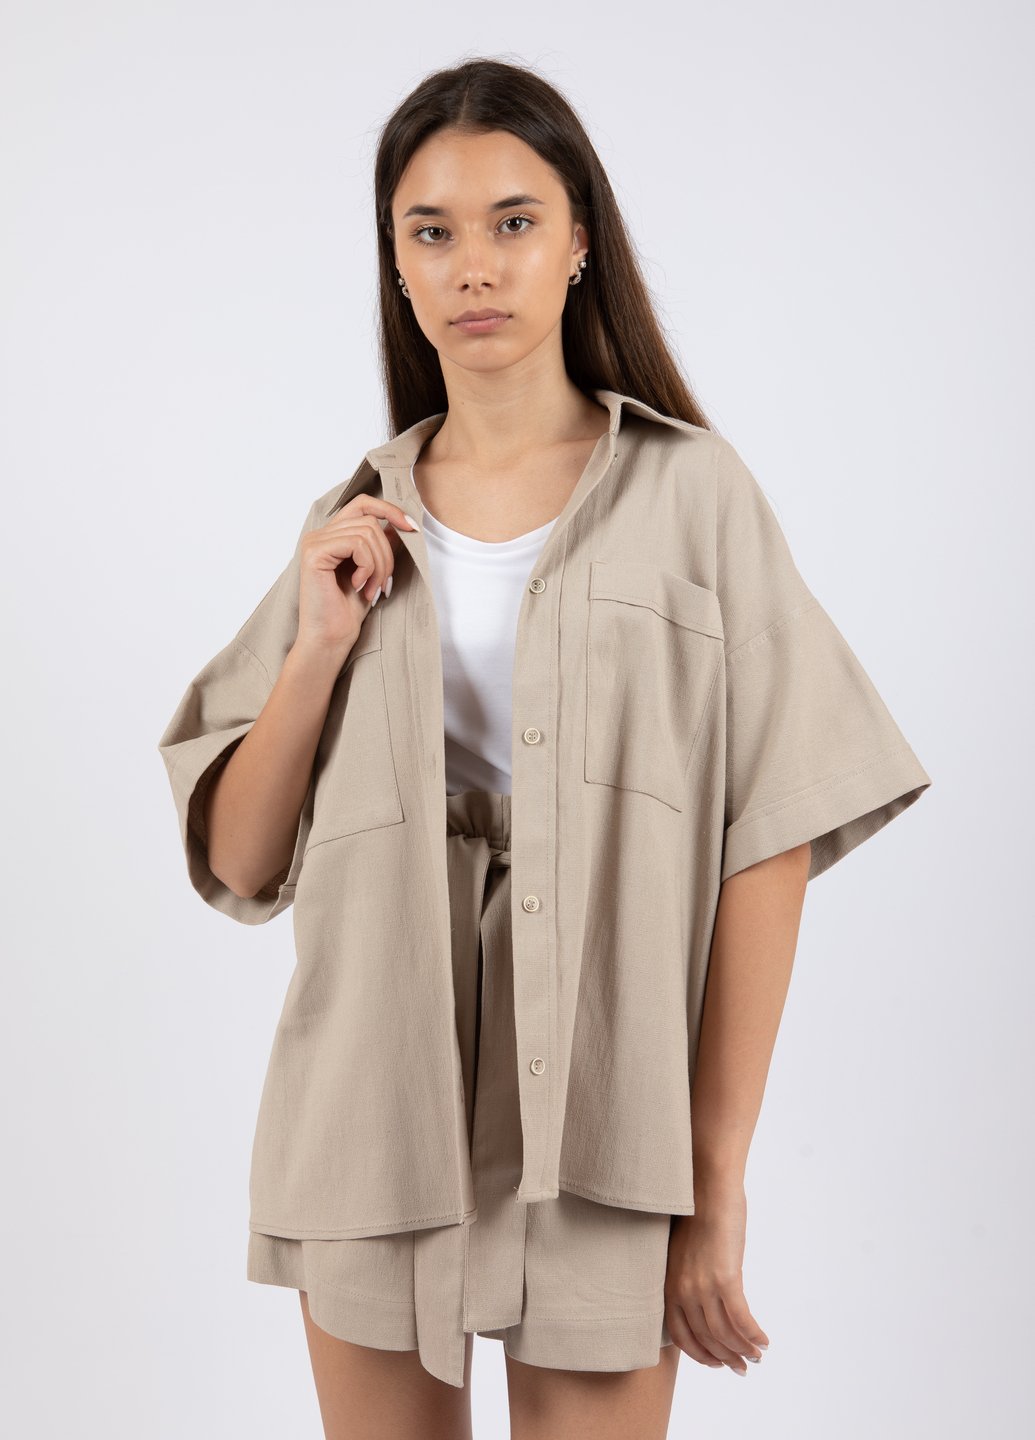 Купить Льняная оверсайз рубашка женская Merlini Касабланка 200000021 - Бежевый, 42-44 в интернет-магазине